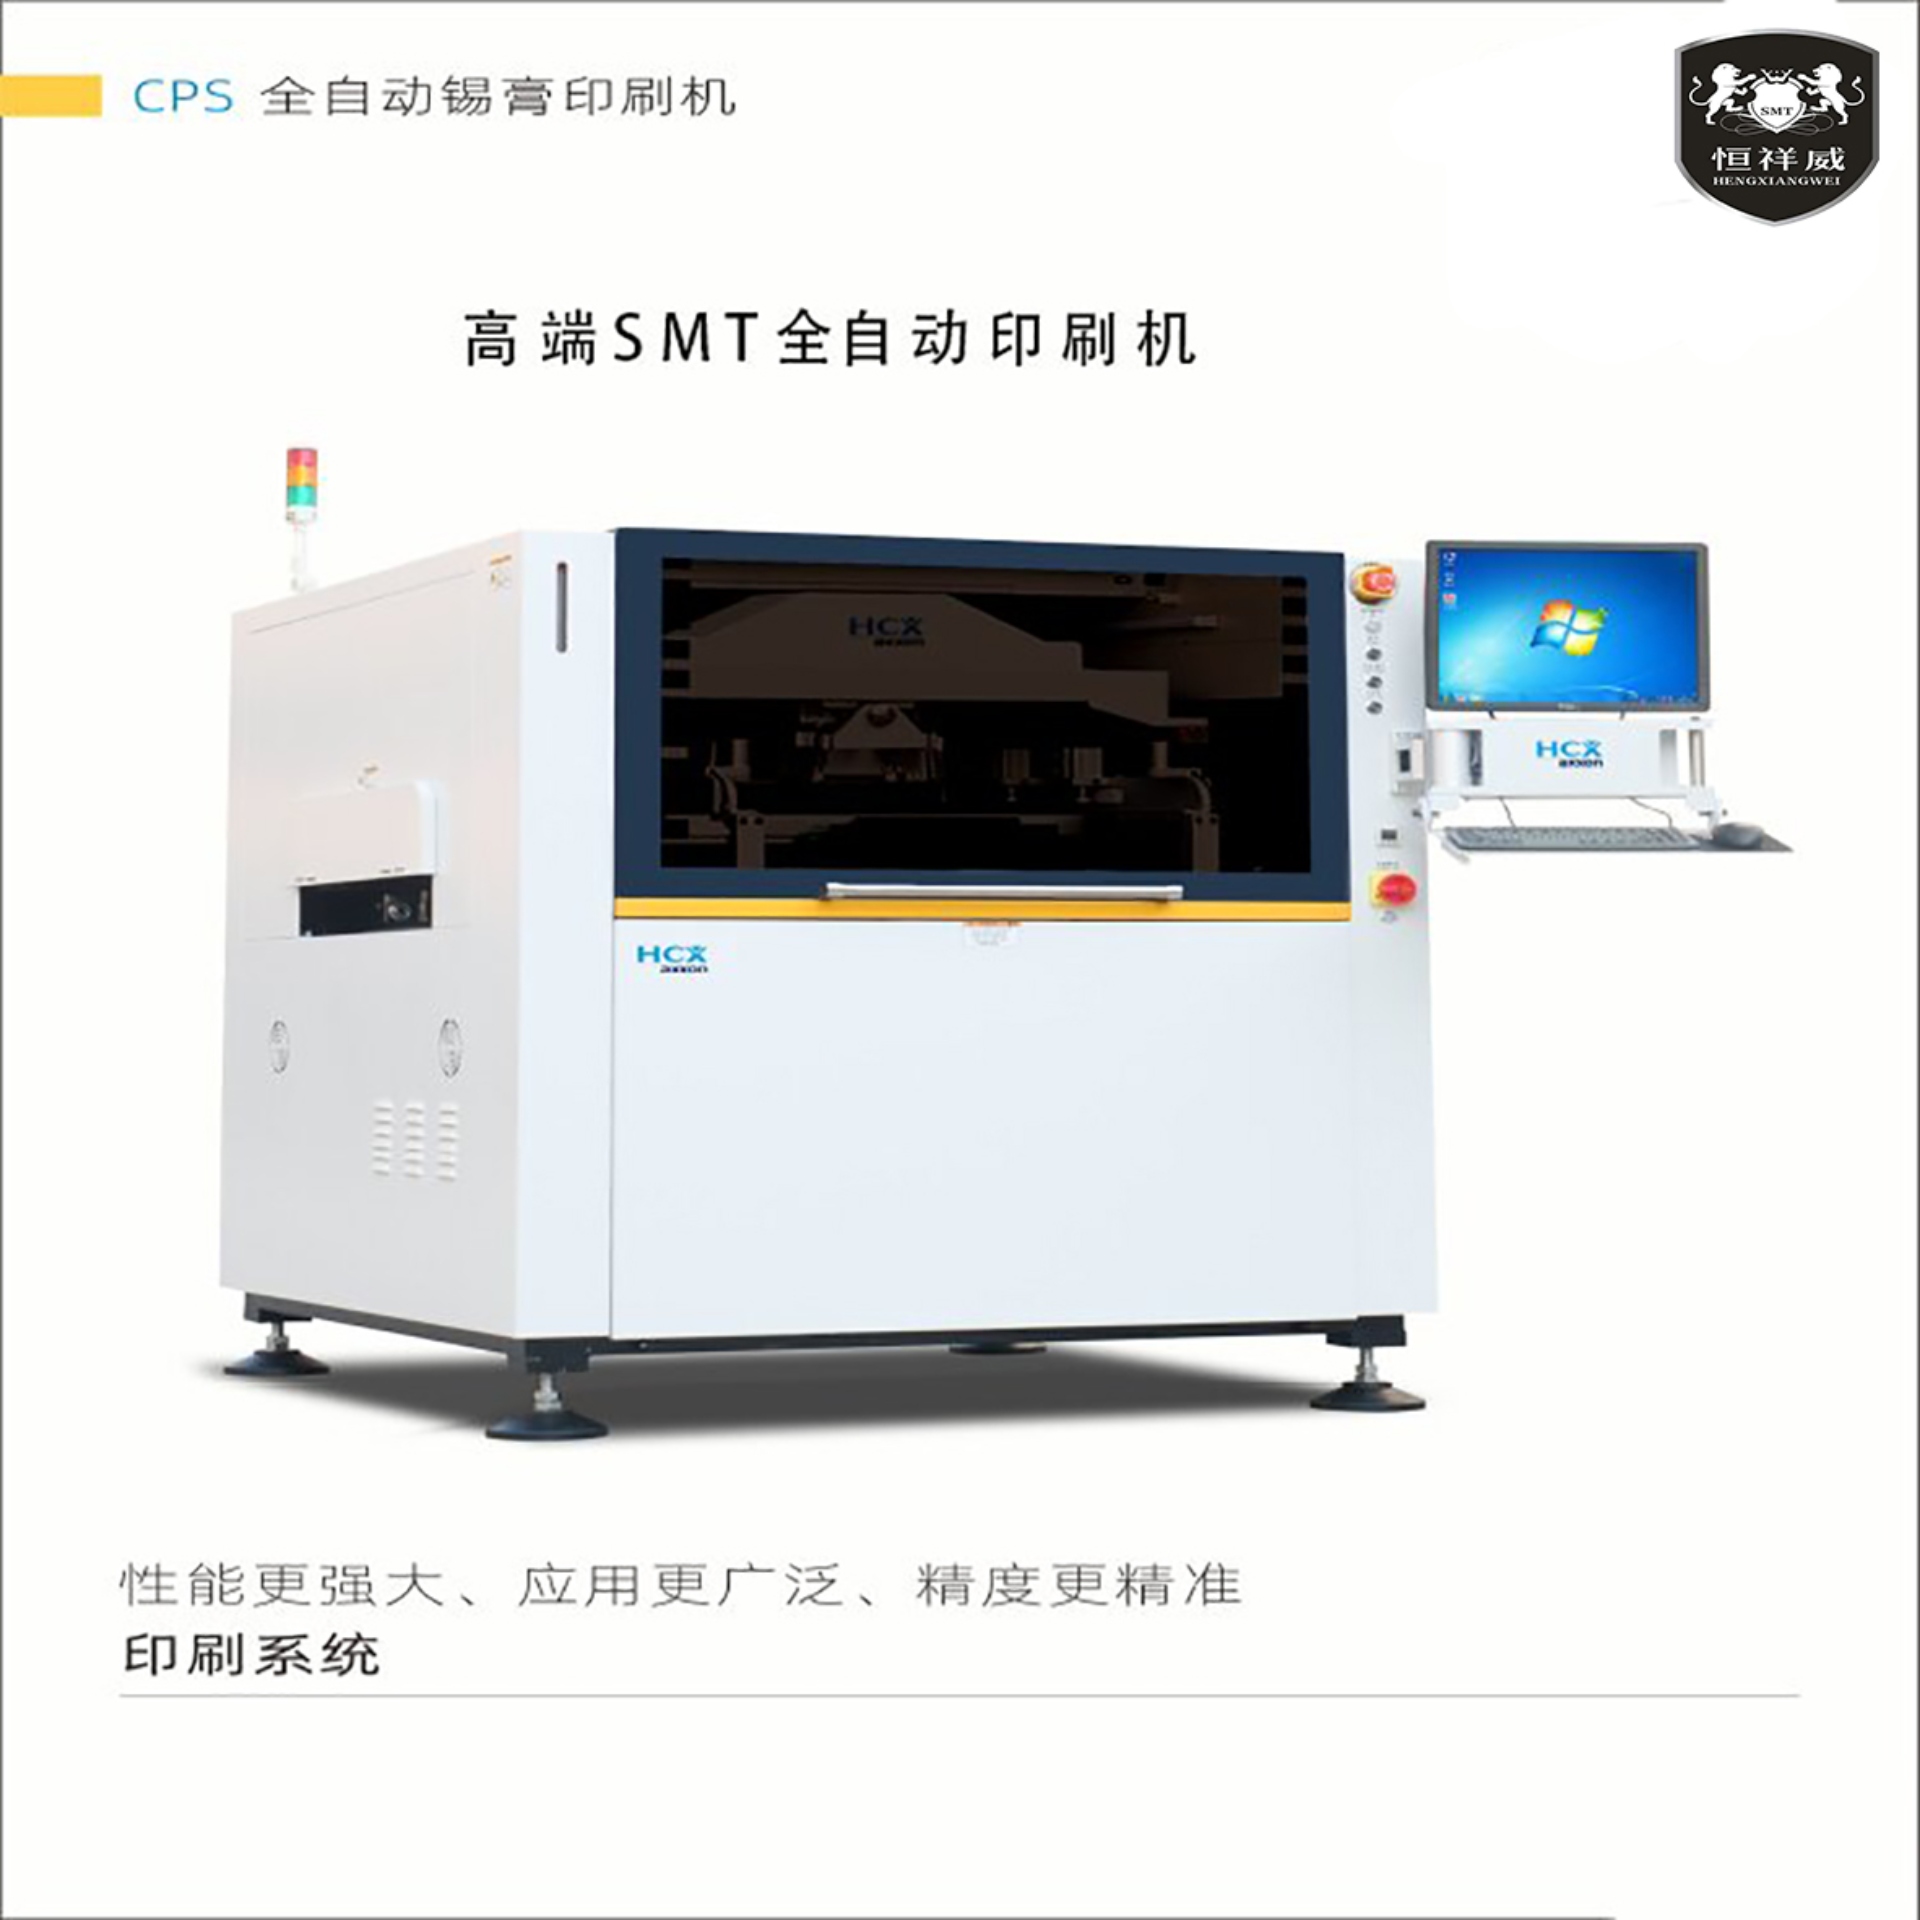 全自动锡膏印刷机 CPS系列高端SMT印刷机 精度更精准